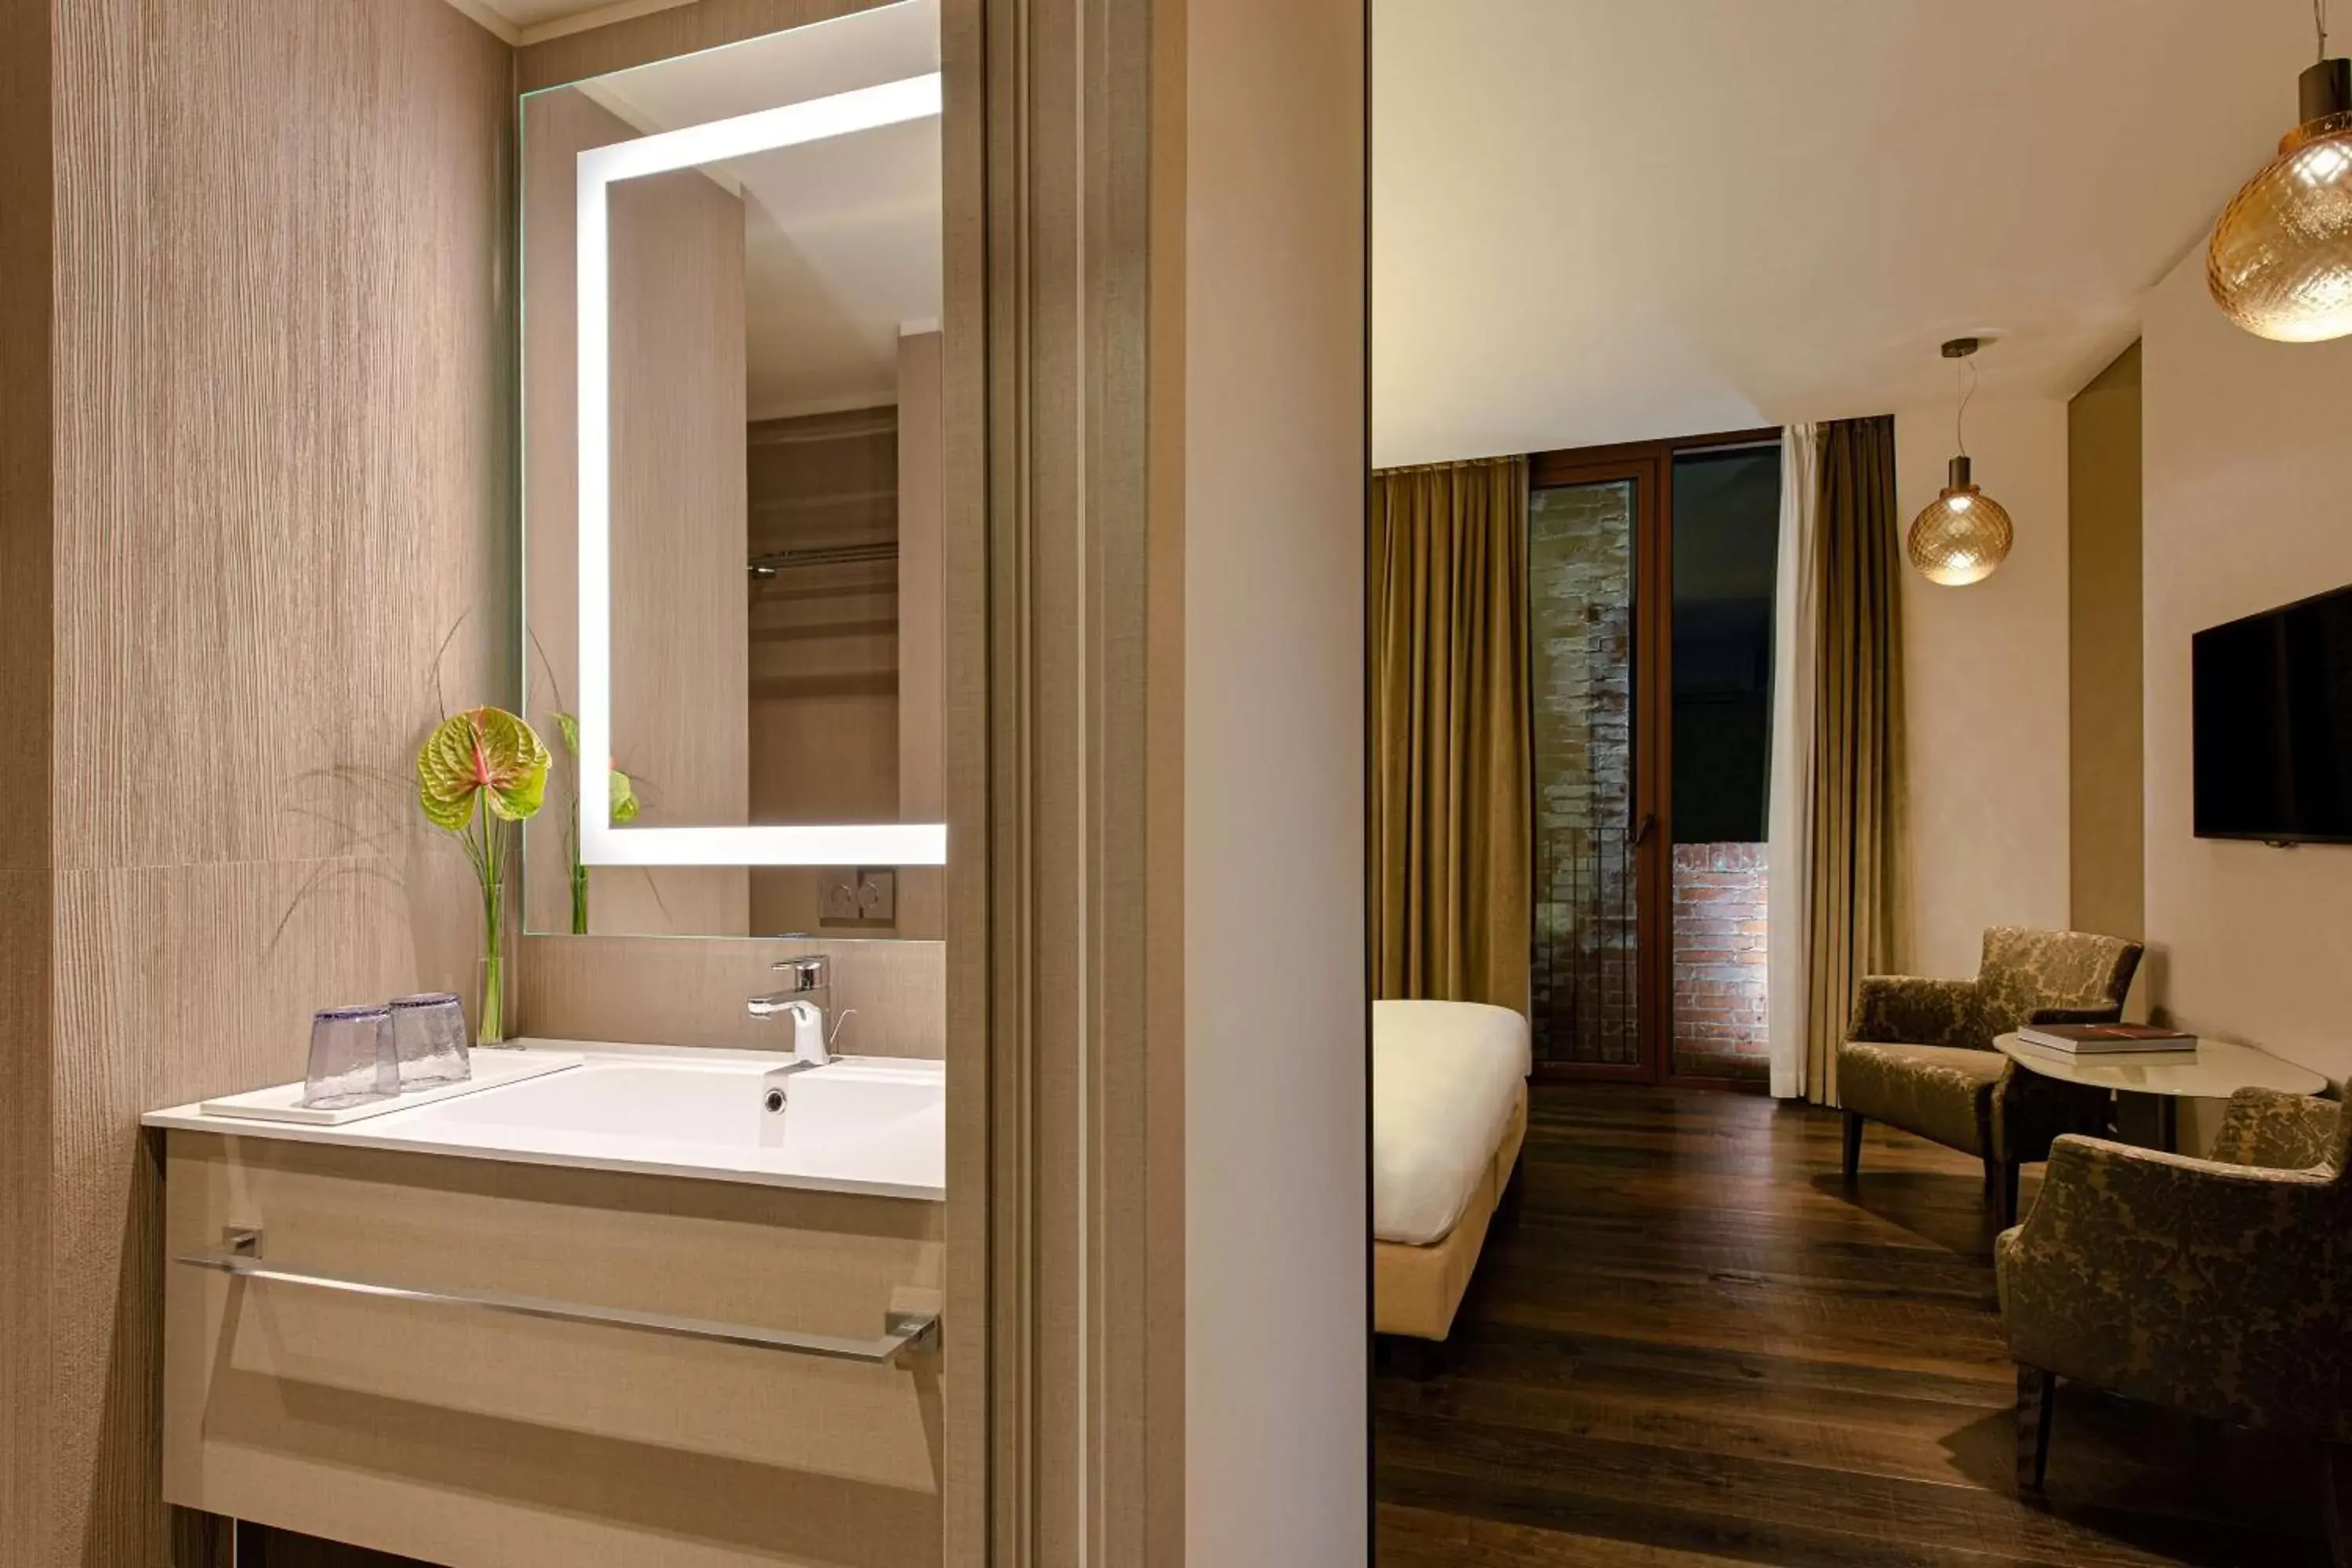 Bedroom, Bathroom in Hyatt Centric Murano Venice